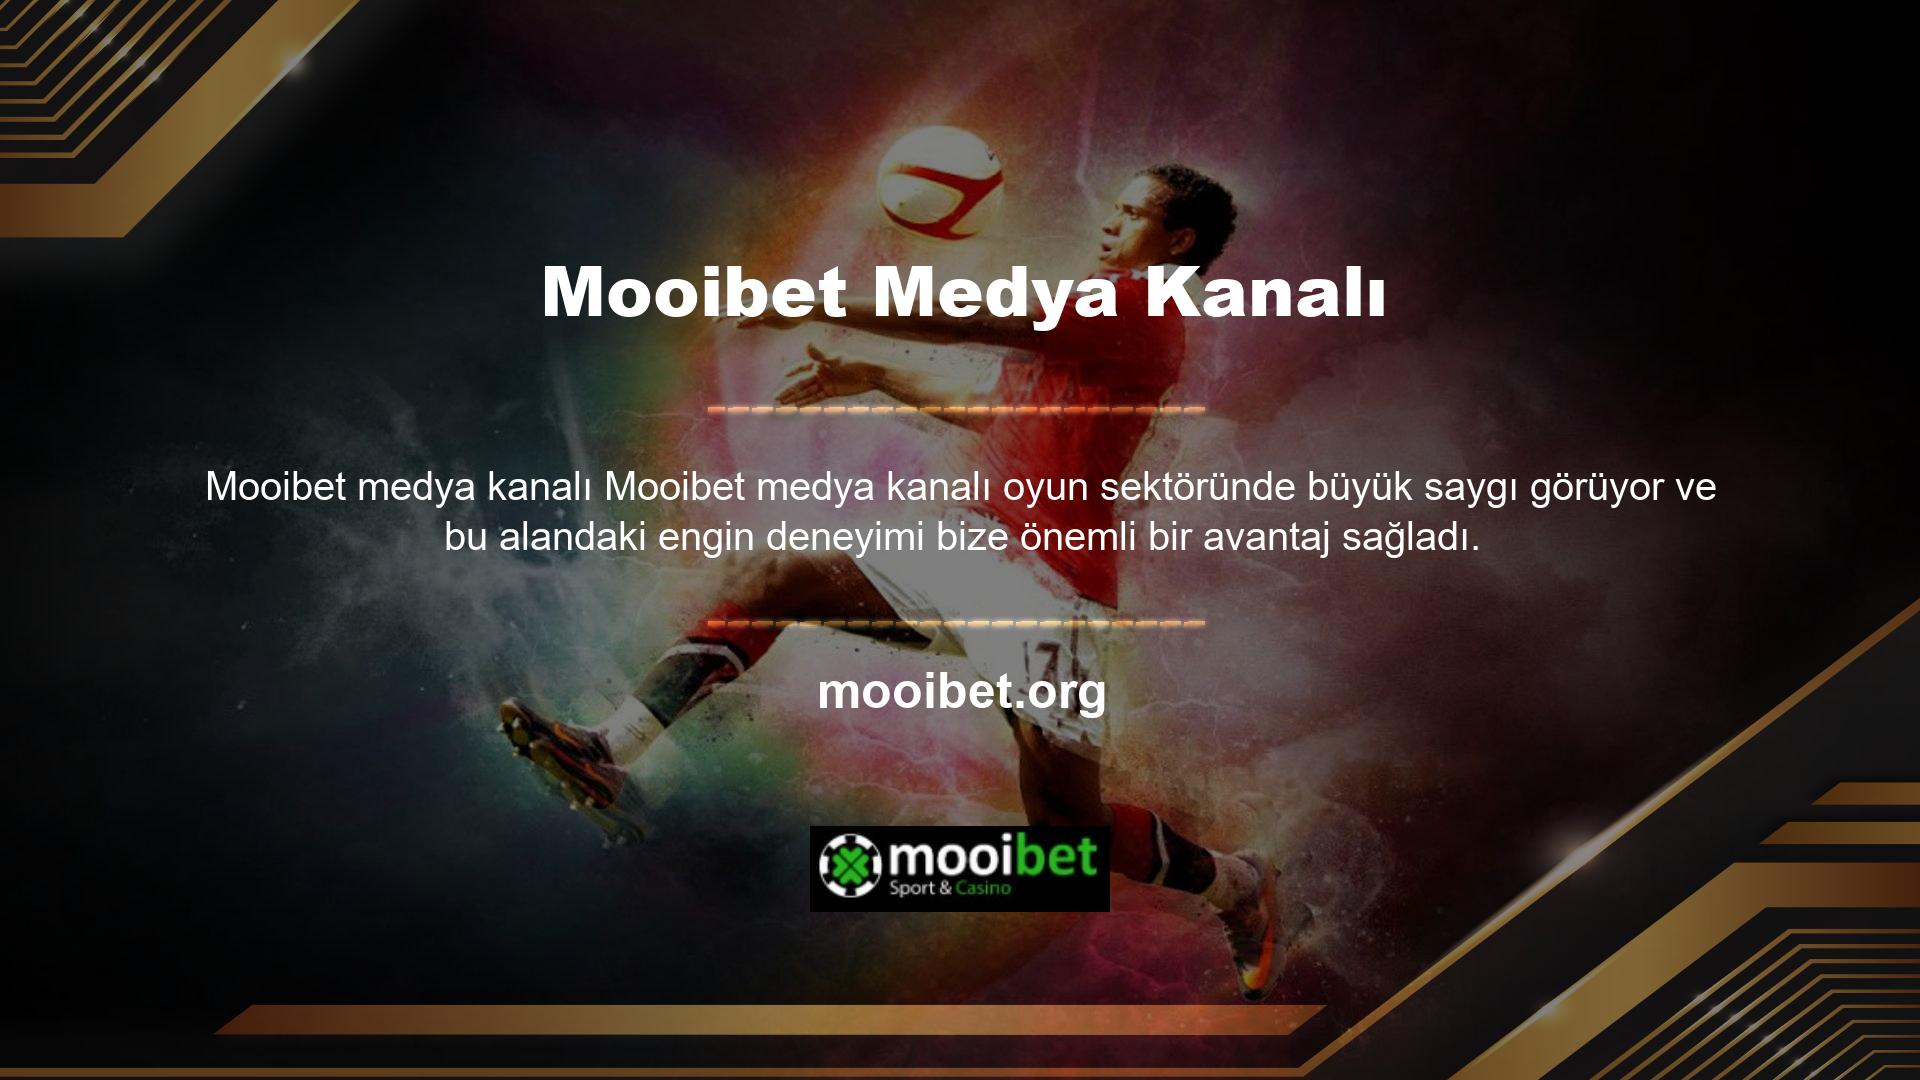 Mooibet En güvenilir bahis sitelerinden biri haline geldi ve şu anda en üst sıralarda yer alıyor